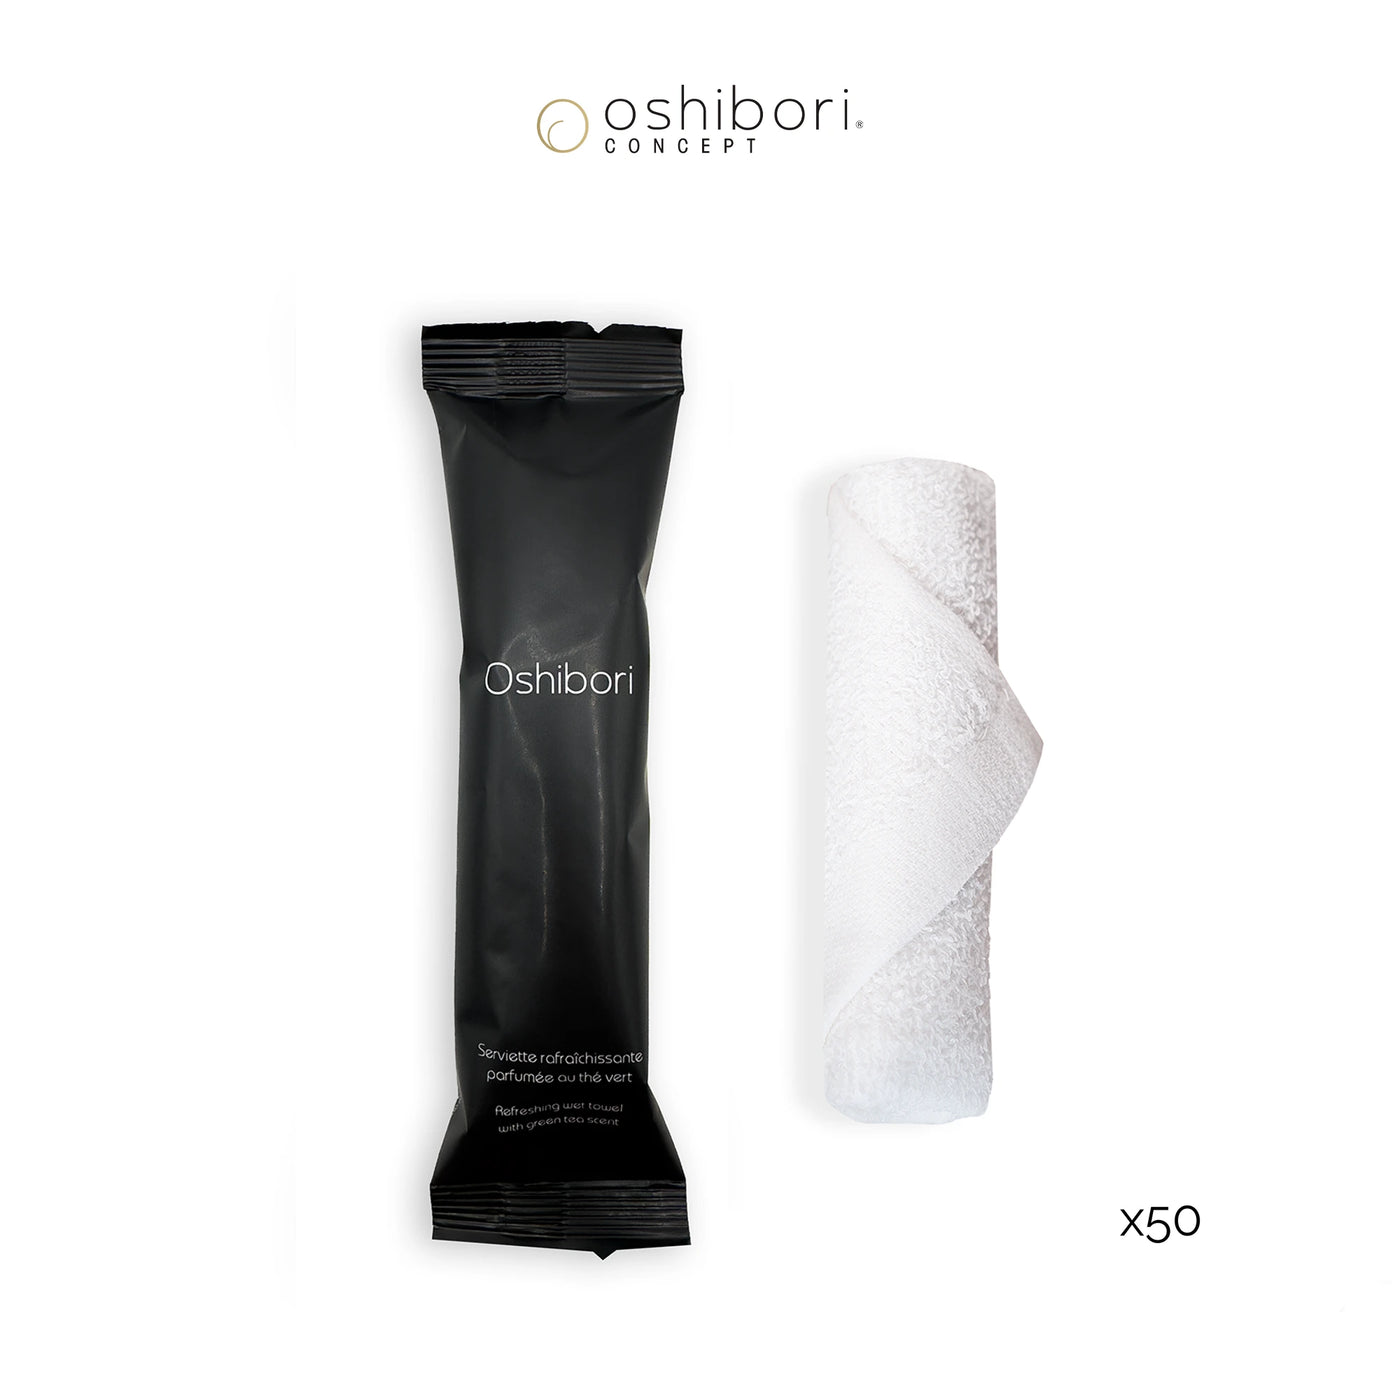 Oshibori rafraichissant - 10 grammes - Noir (x50)